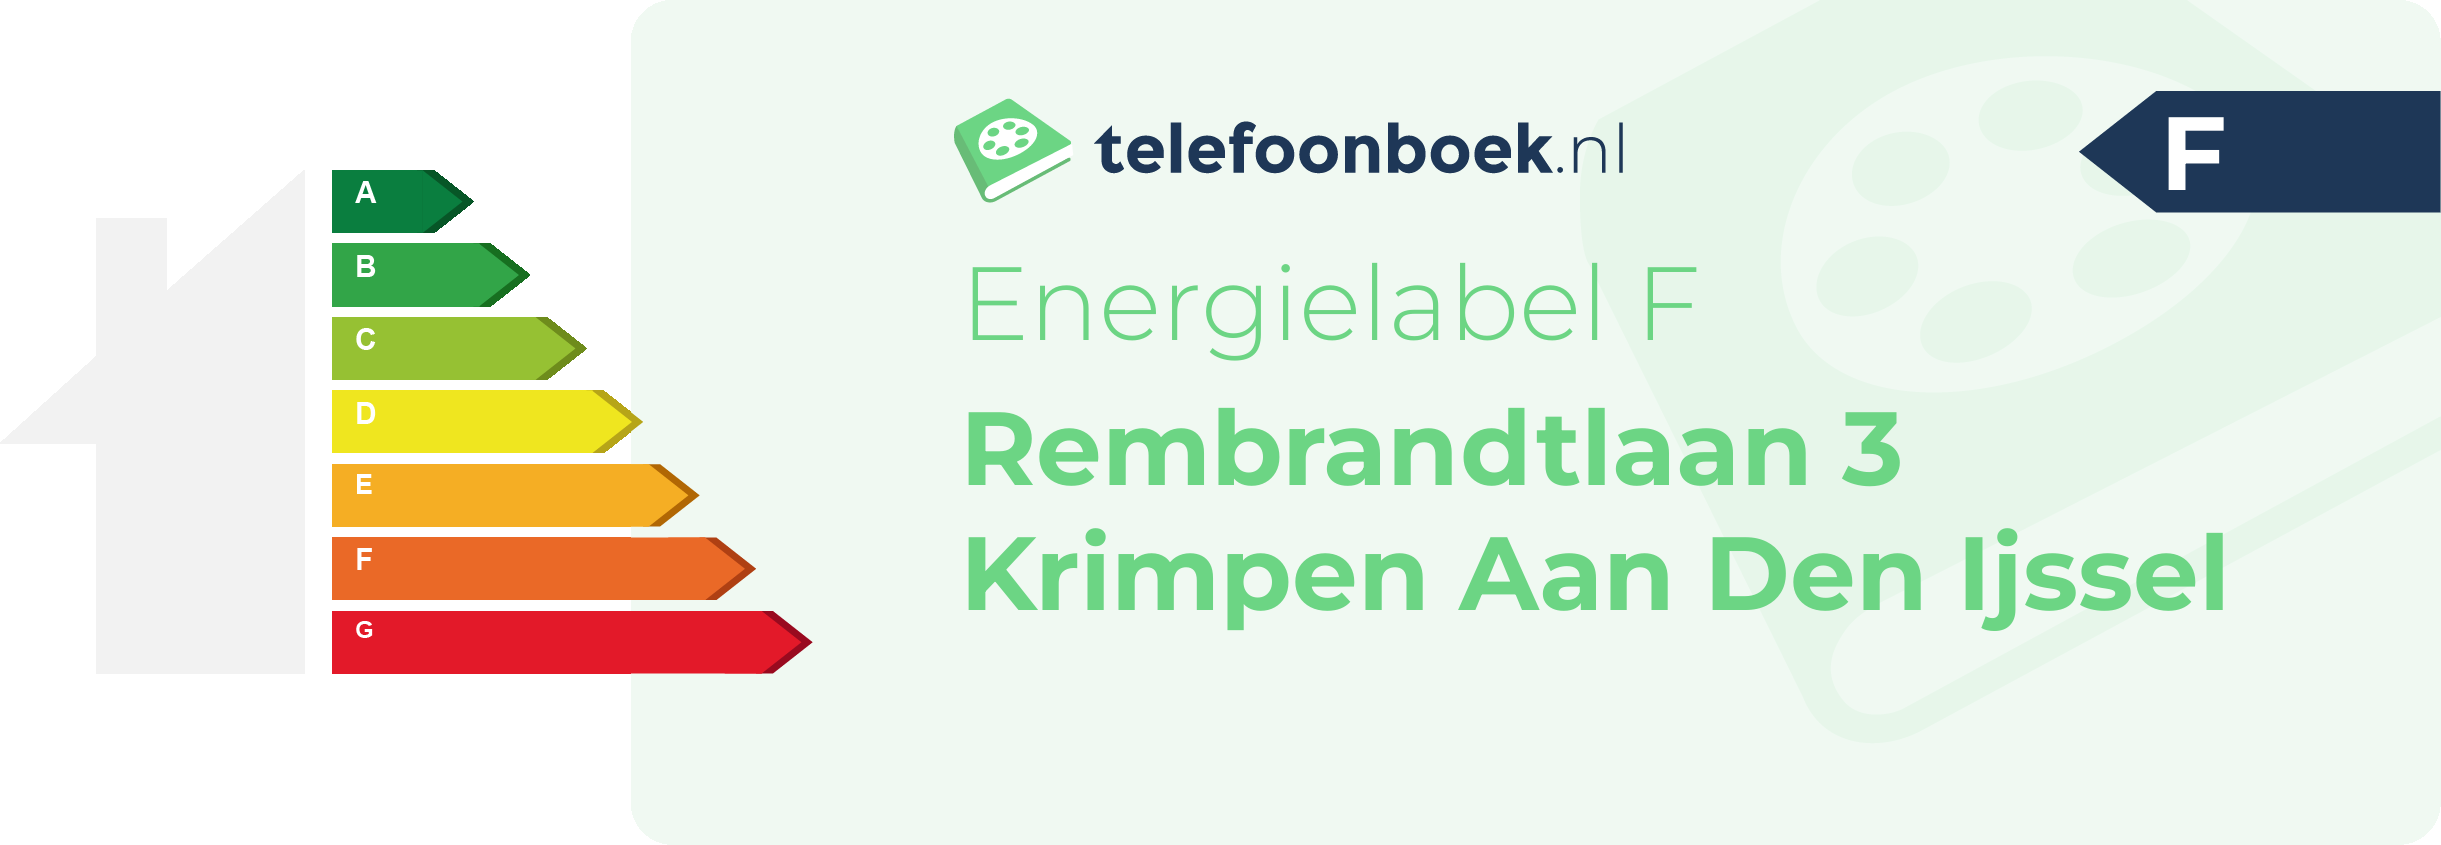 Energielabel Rembrandtlaan 3 Krimpen Aan Den Ijssel